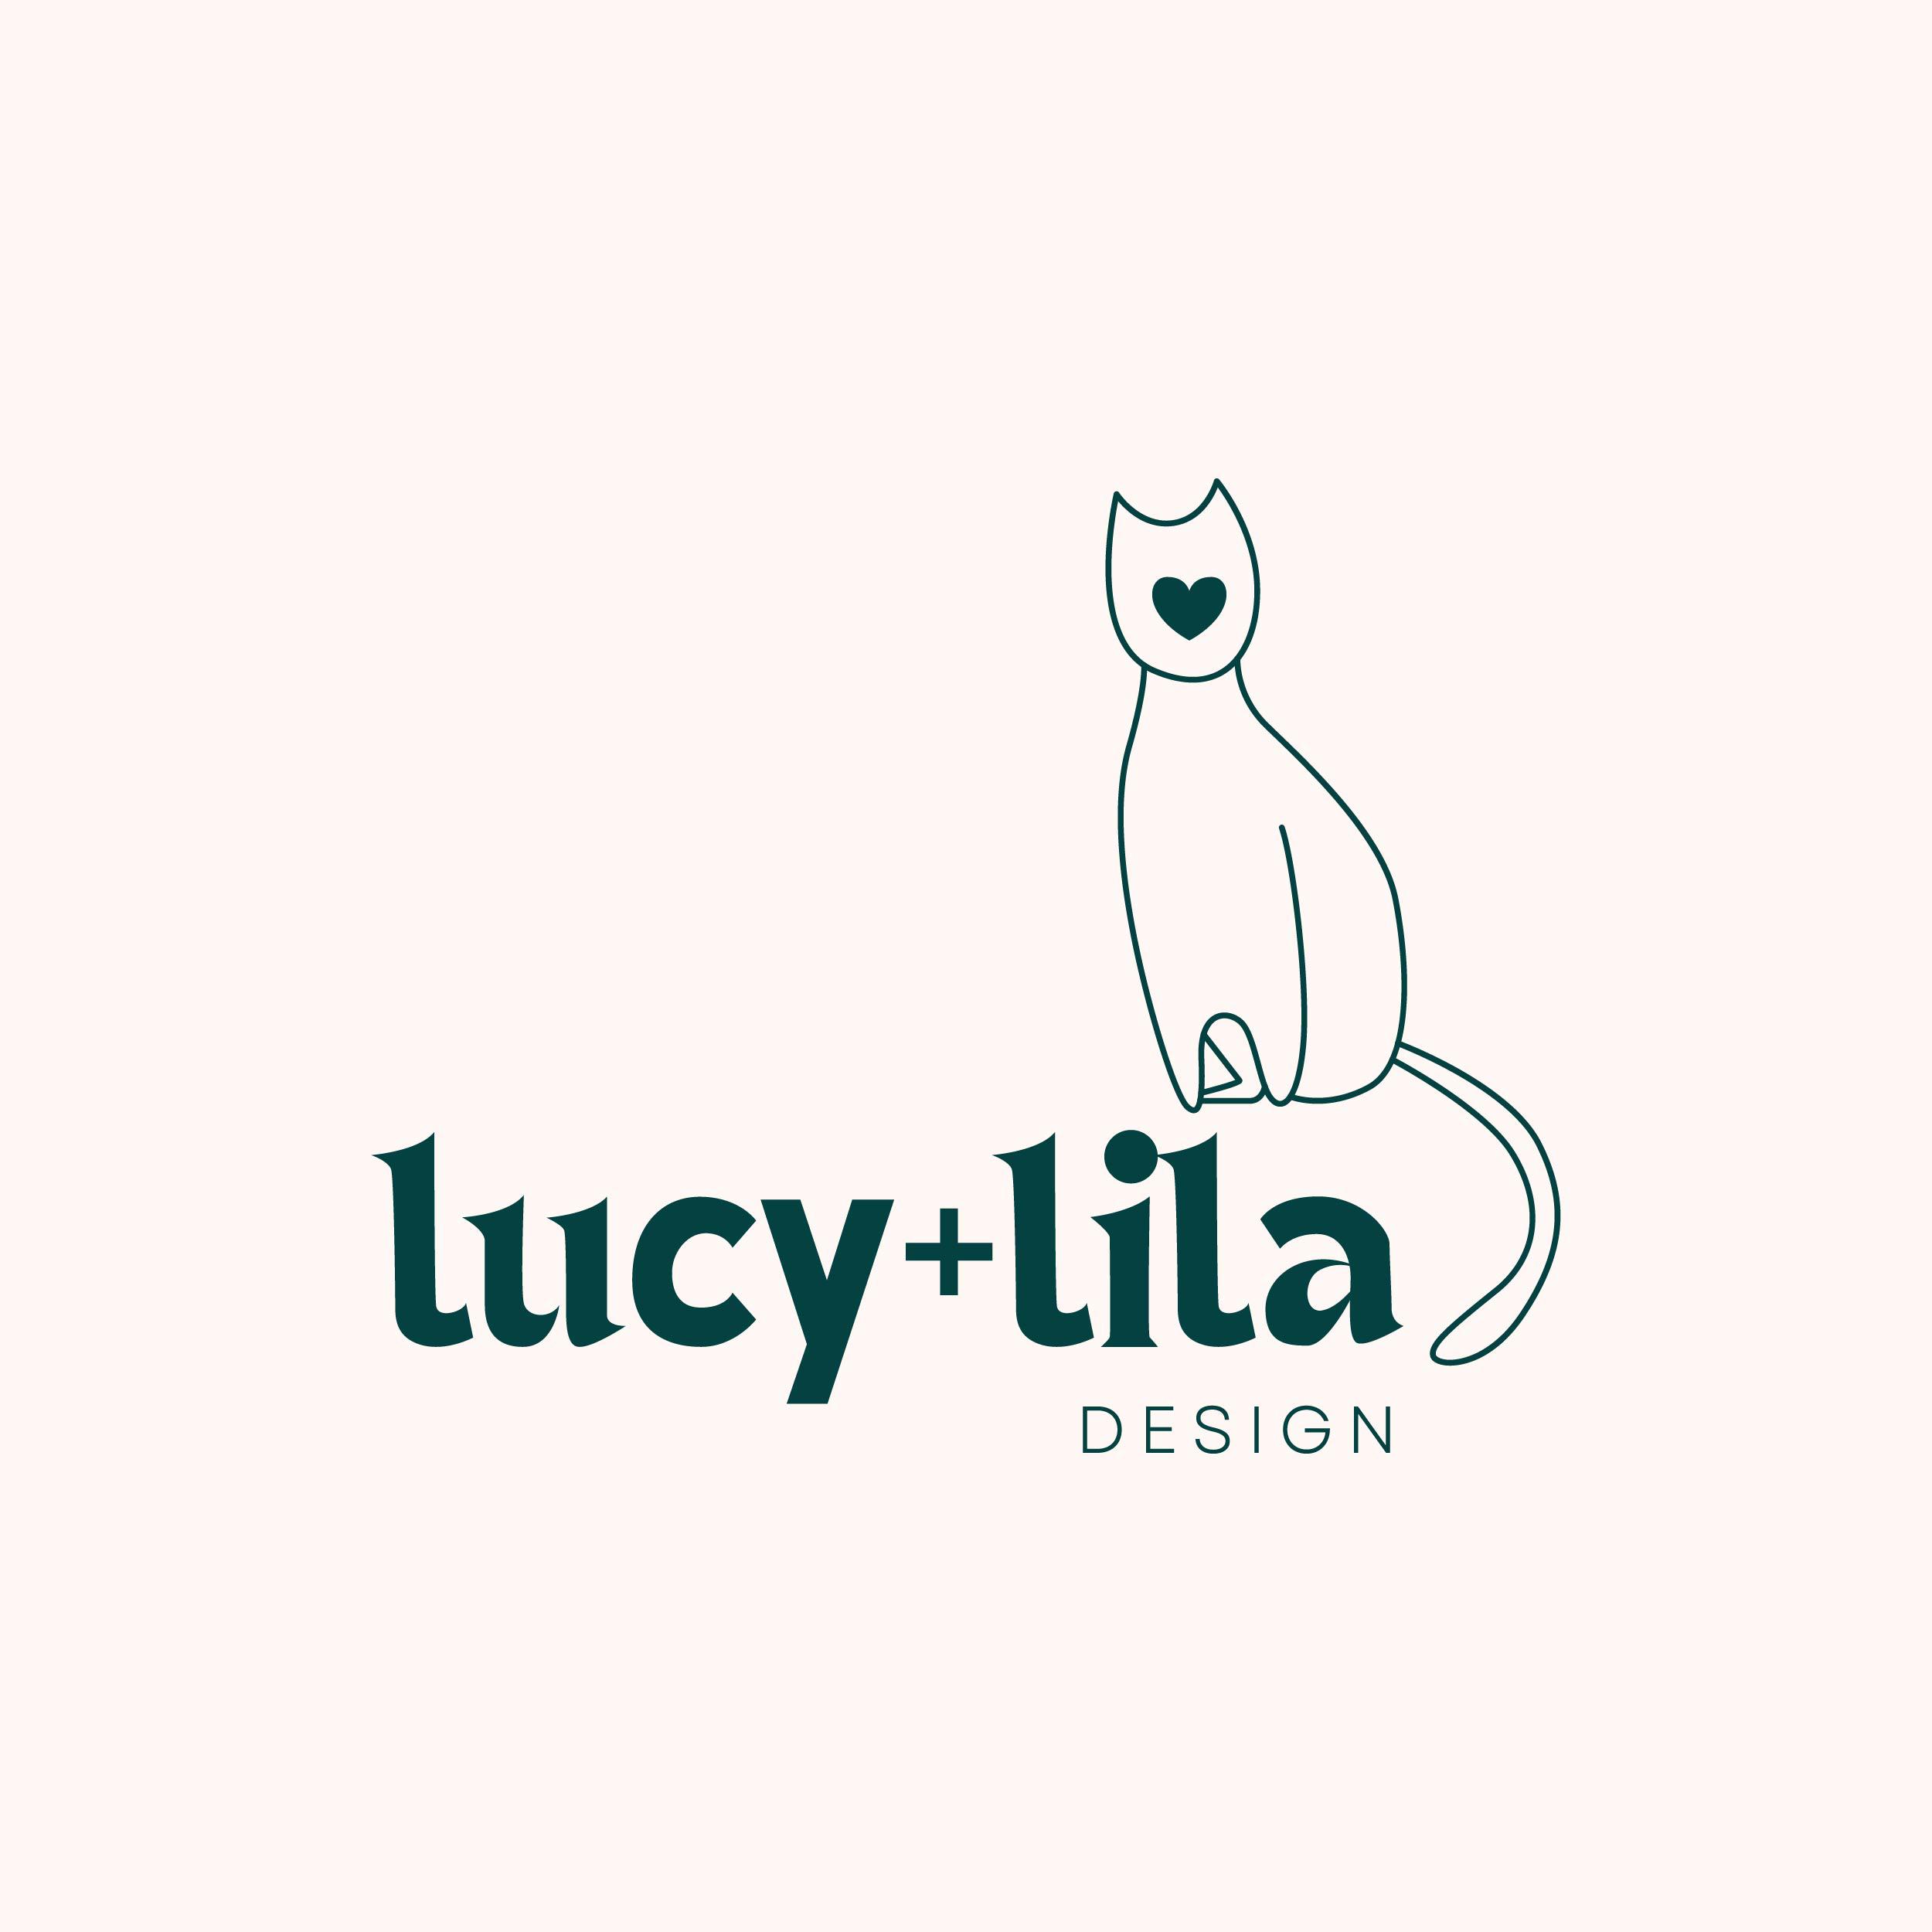 Lucy+Lila Design Logo